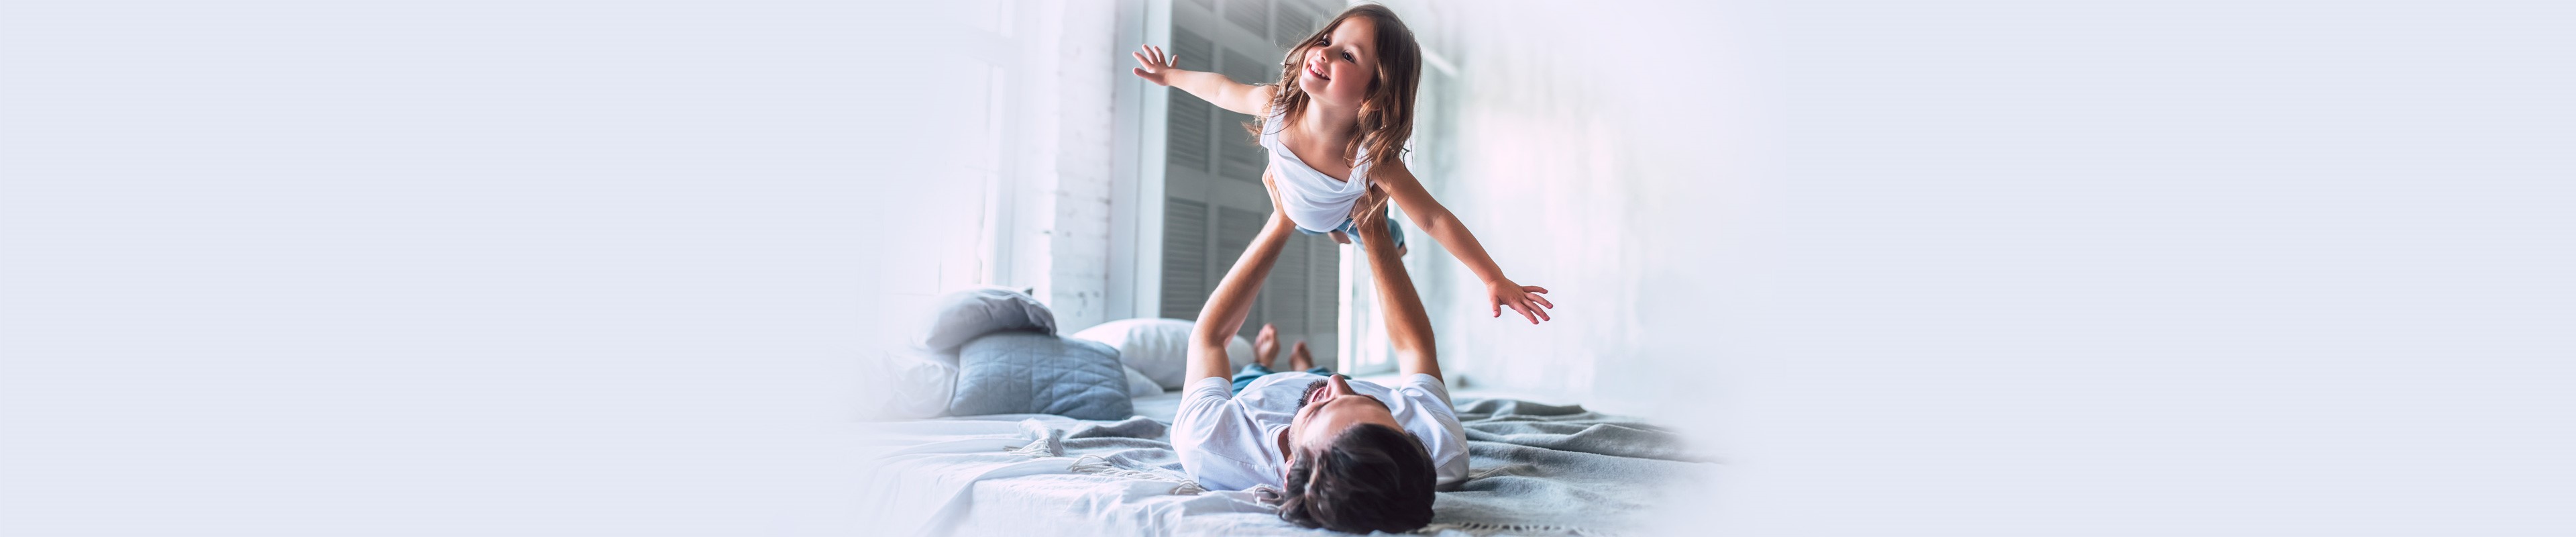 Egy fekvő férfi látható a képen, aki a kislányát tartja a magasba, aki széttárt karokkal úgy tesz, mintha repülne.